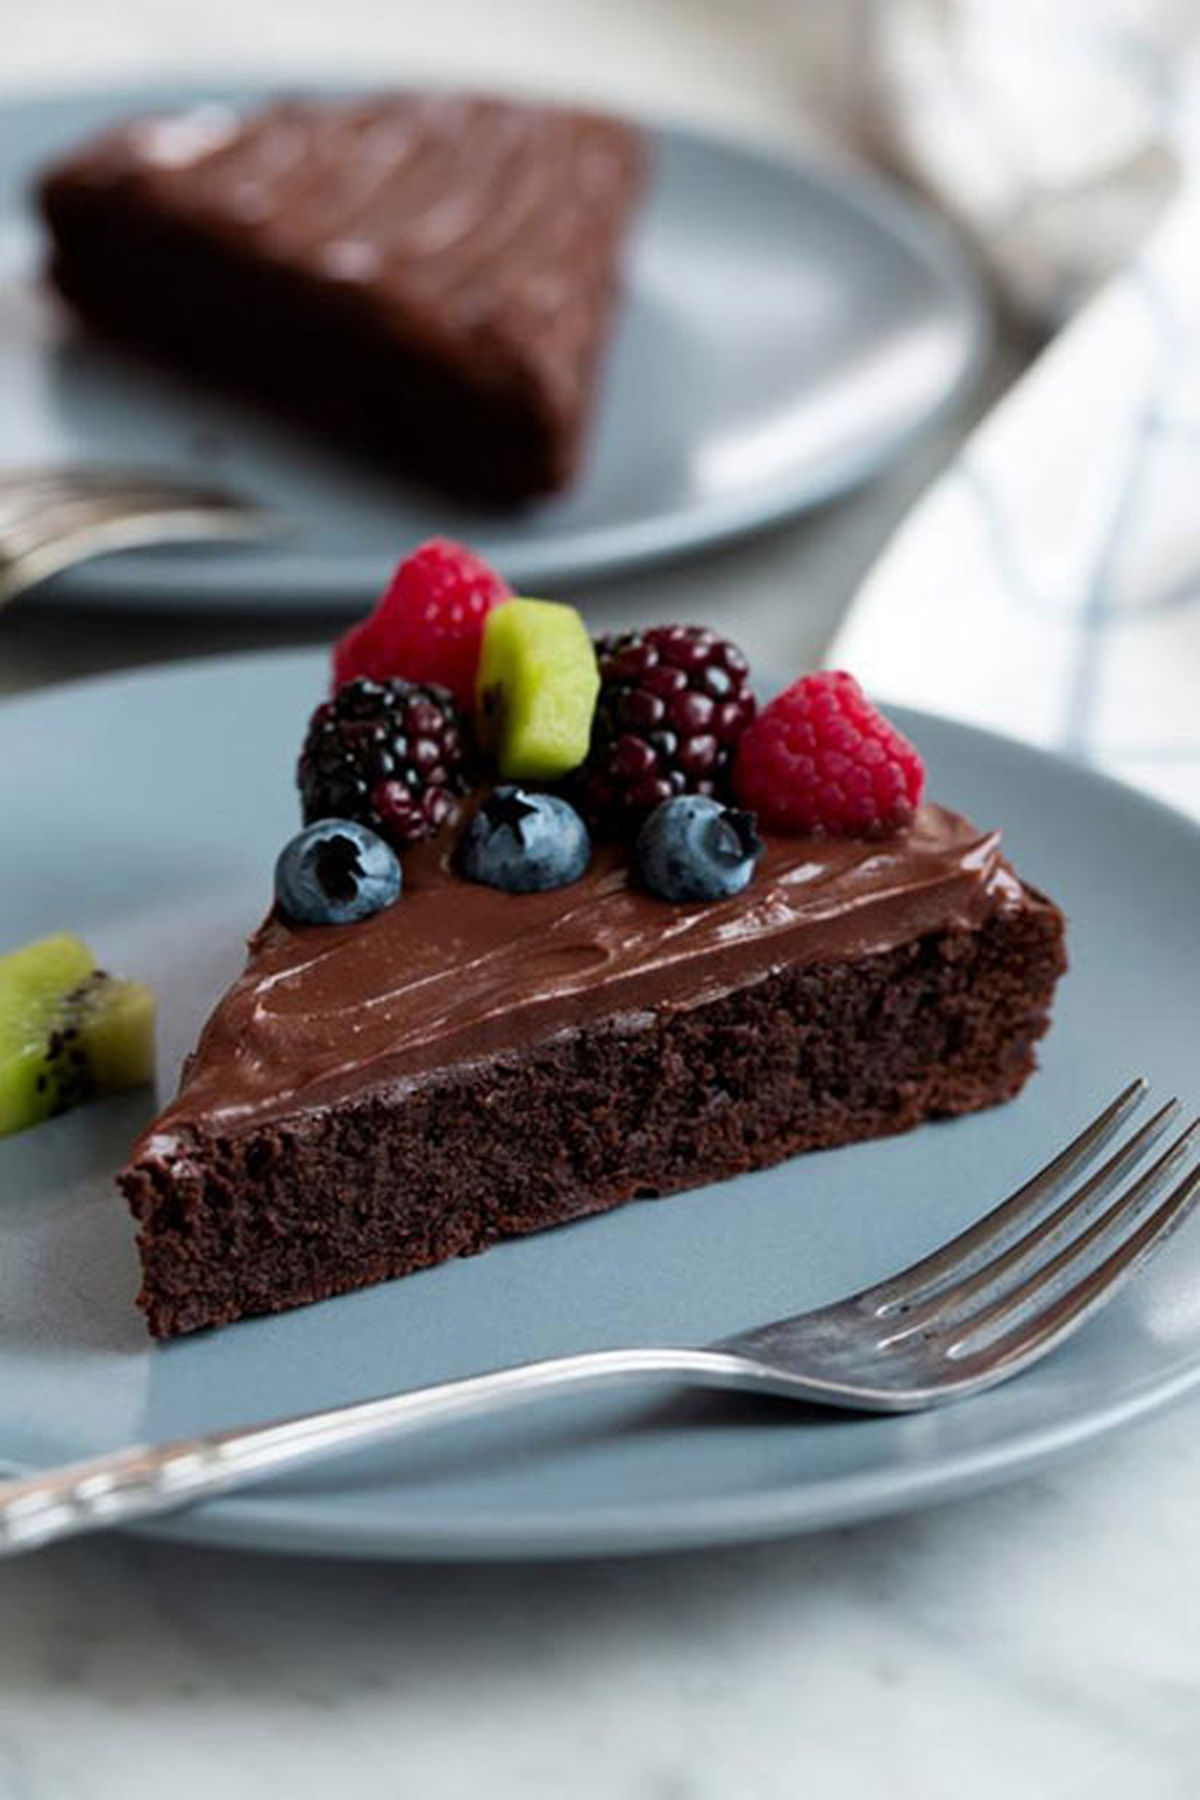 آموزش تهیه کیک شکلاتی بدون آرد مرحله به مرحله